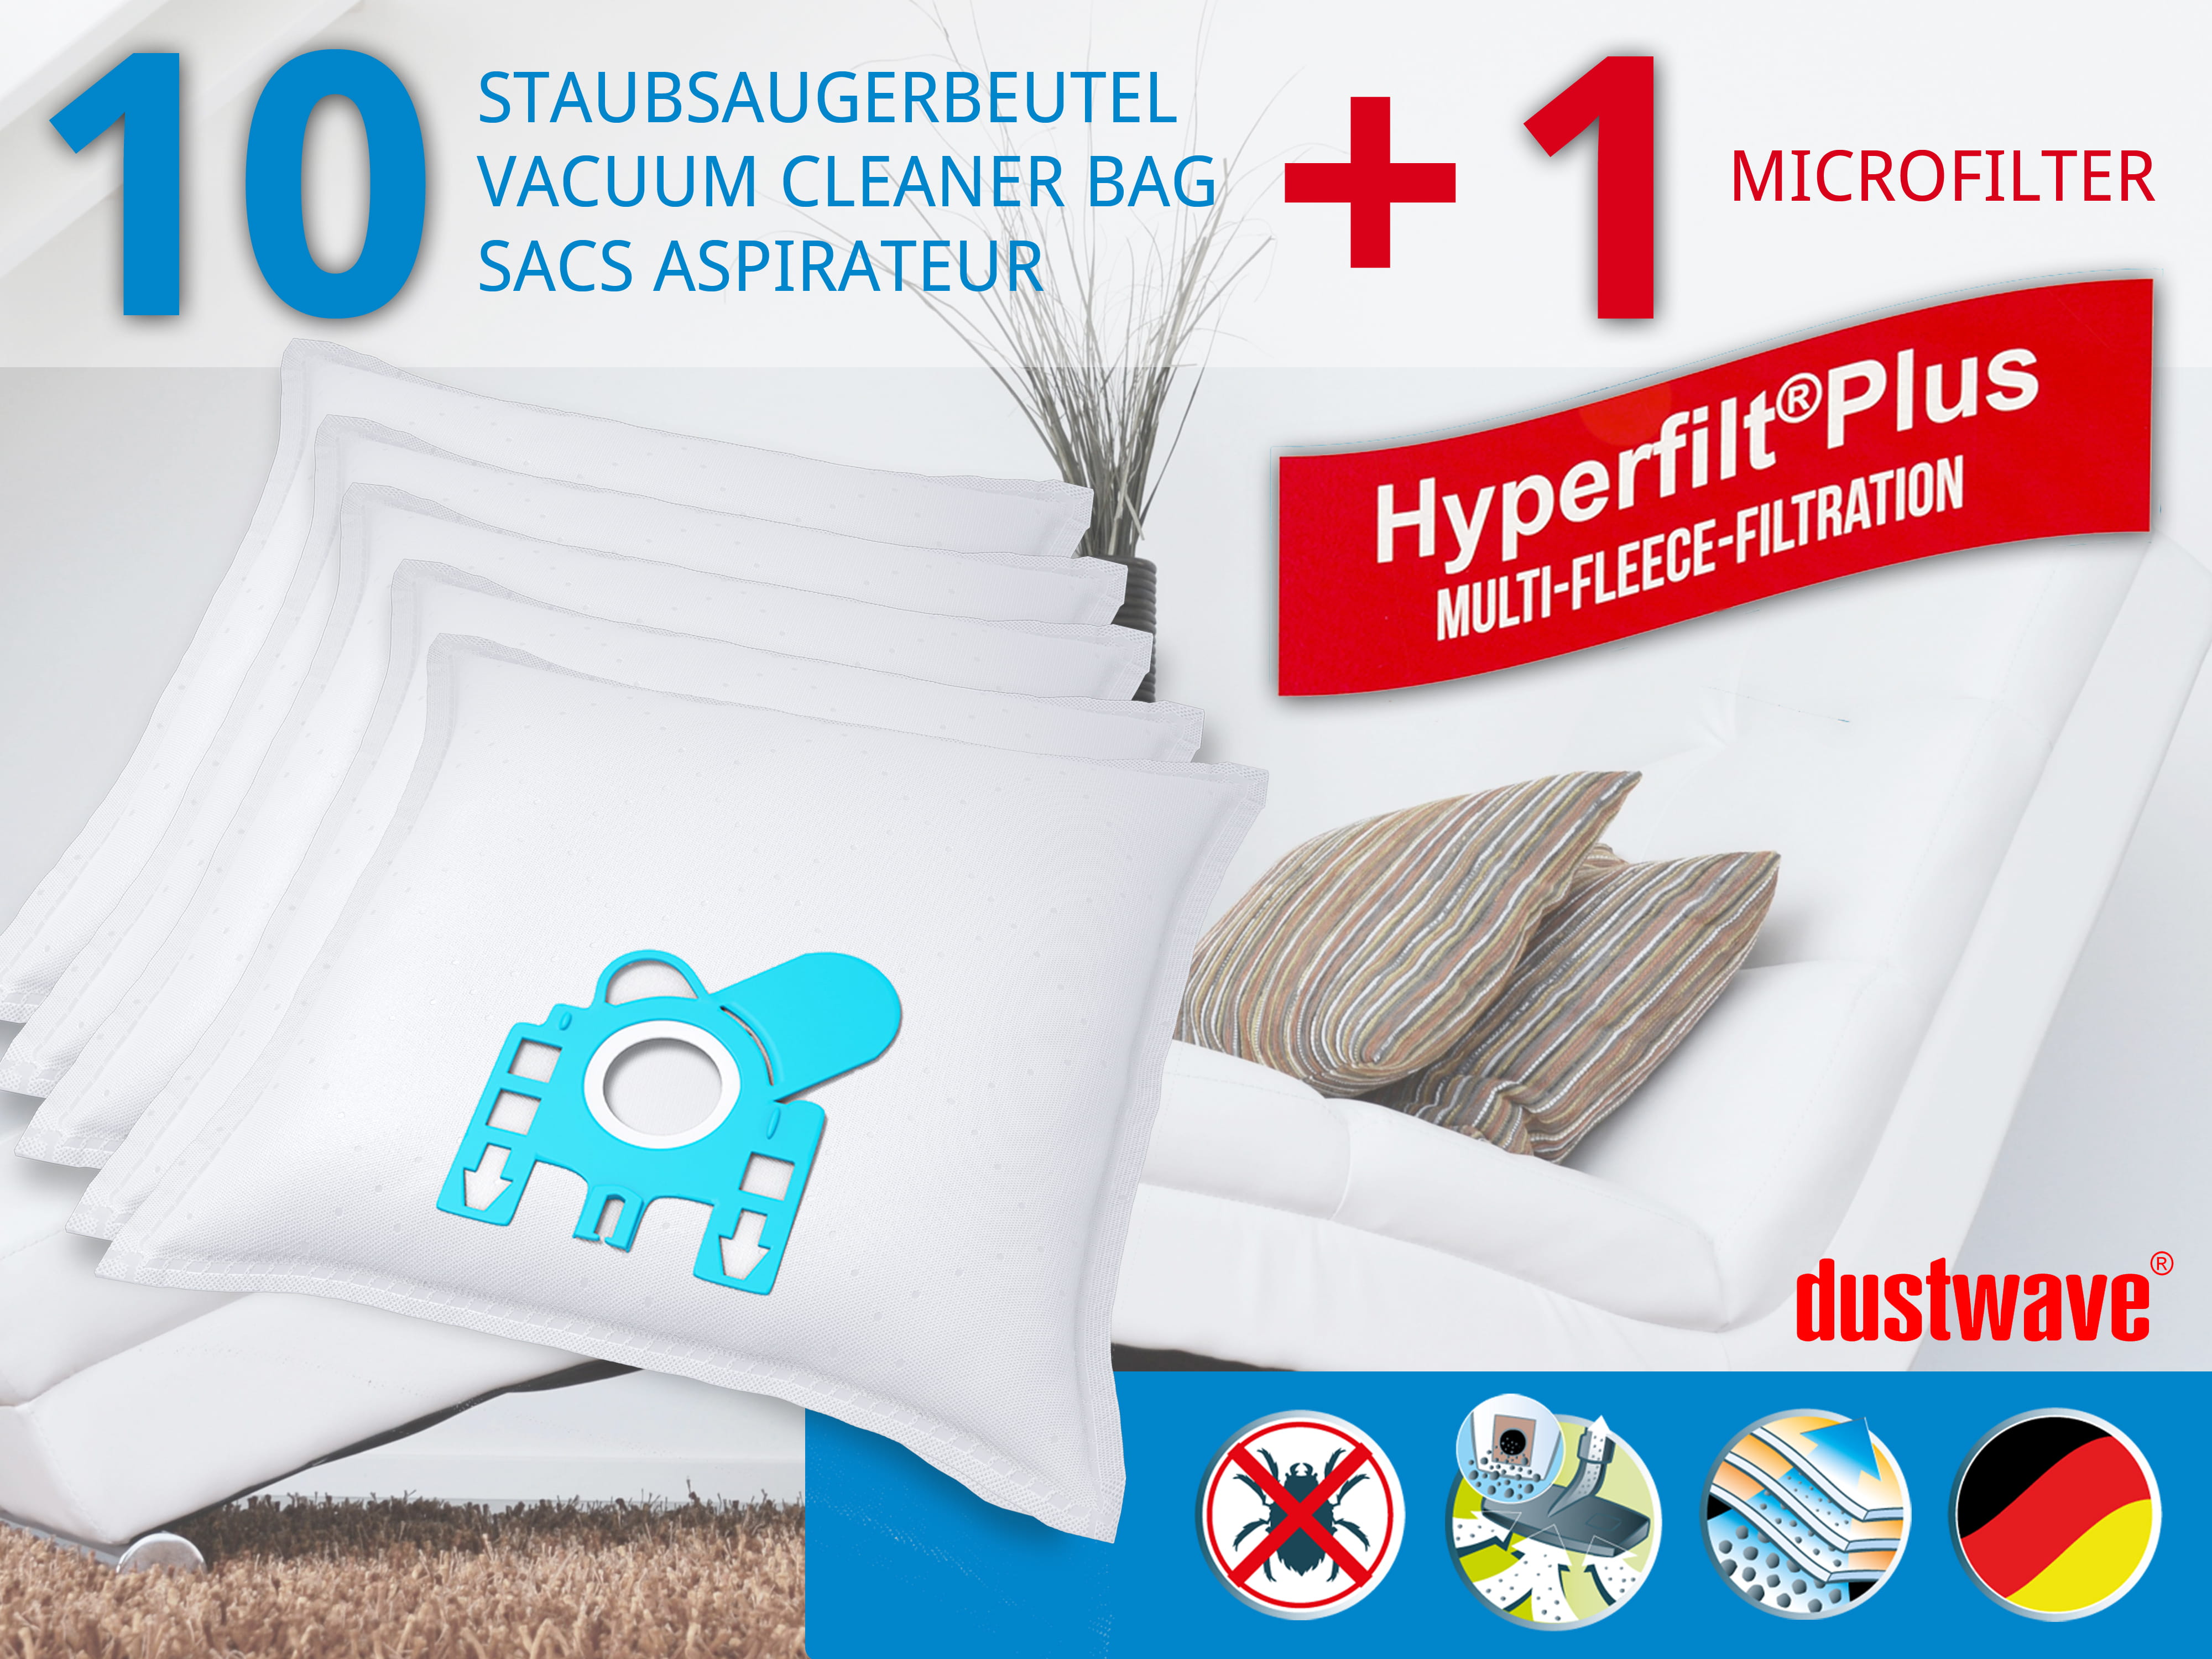 Dustwave® 10 Staubsaugerbeutel für Hoover MICROPOWER - hocheffizient, mehrlagiges Mikrovlies mit Hygieneverschluss - Made in Germany